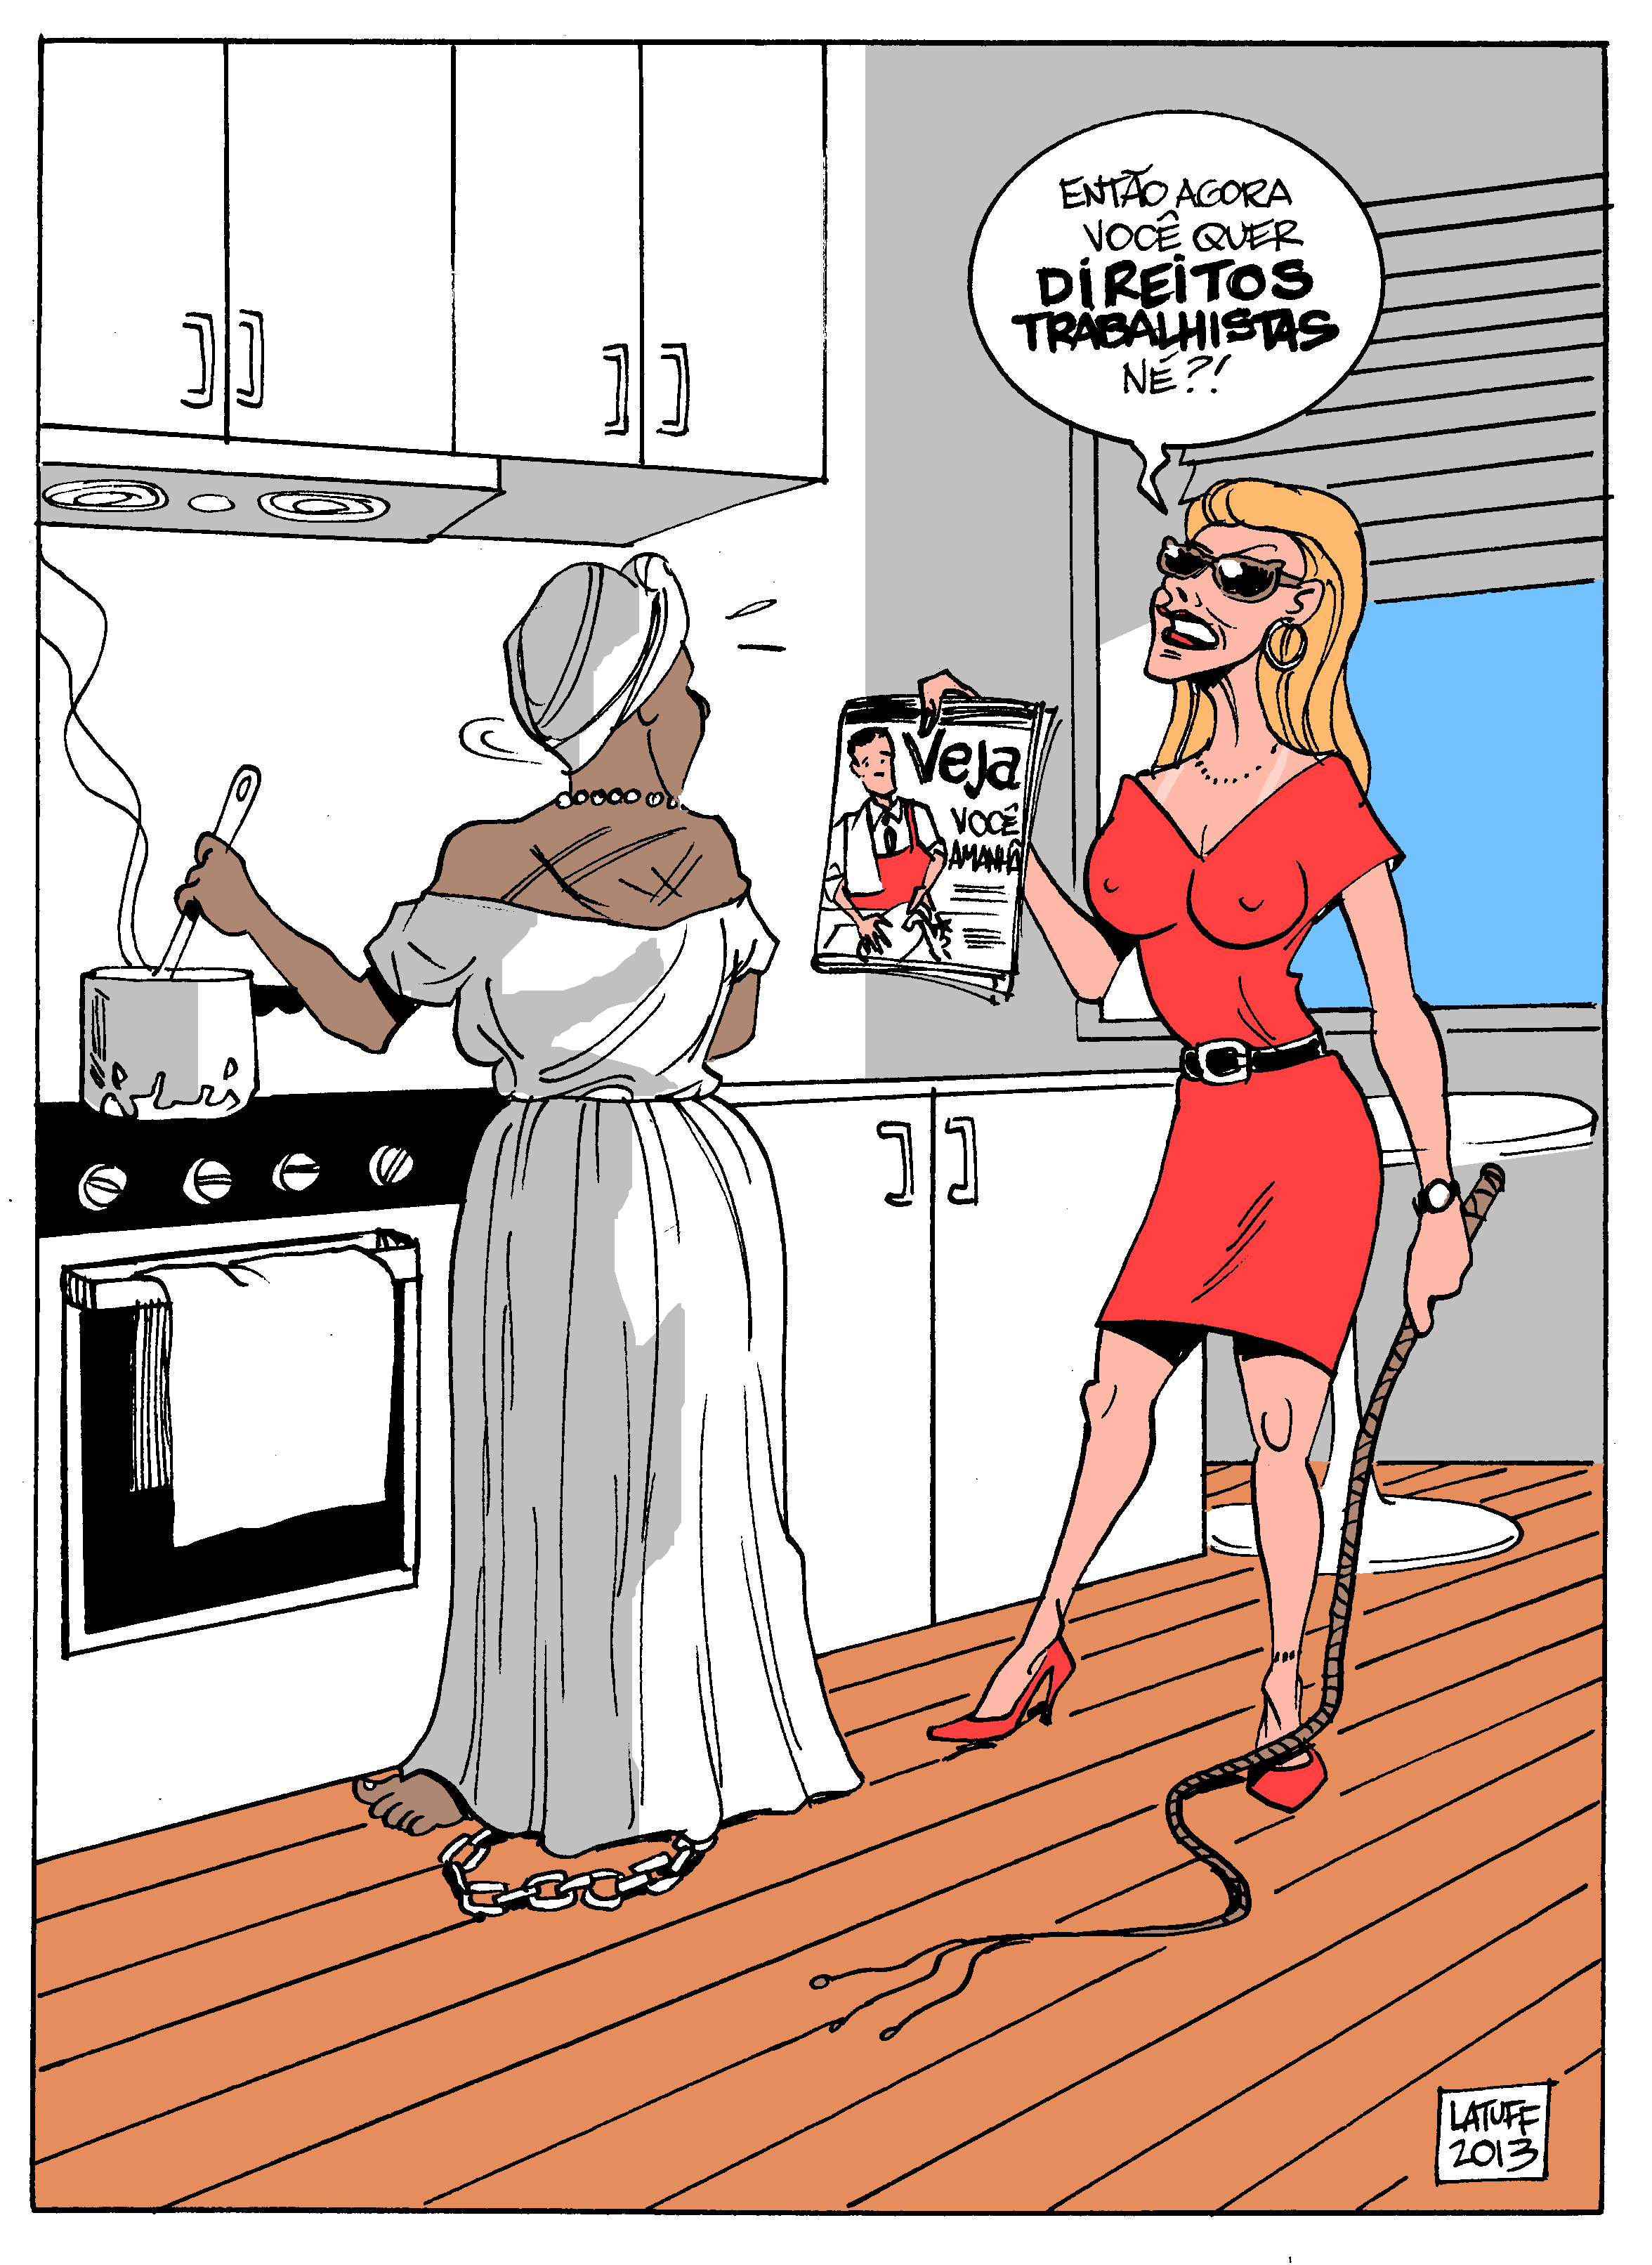 direitos-trabalhistas-empregadas-domesticas